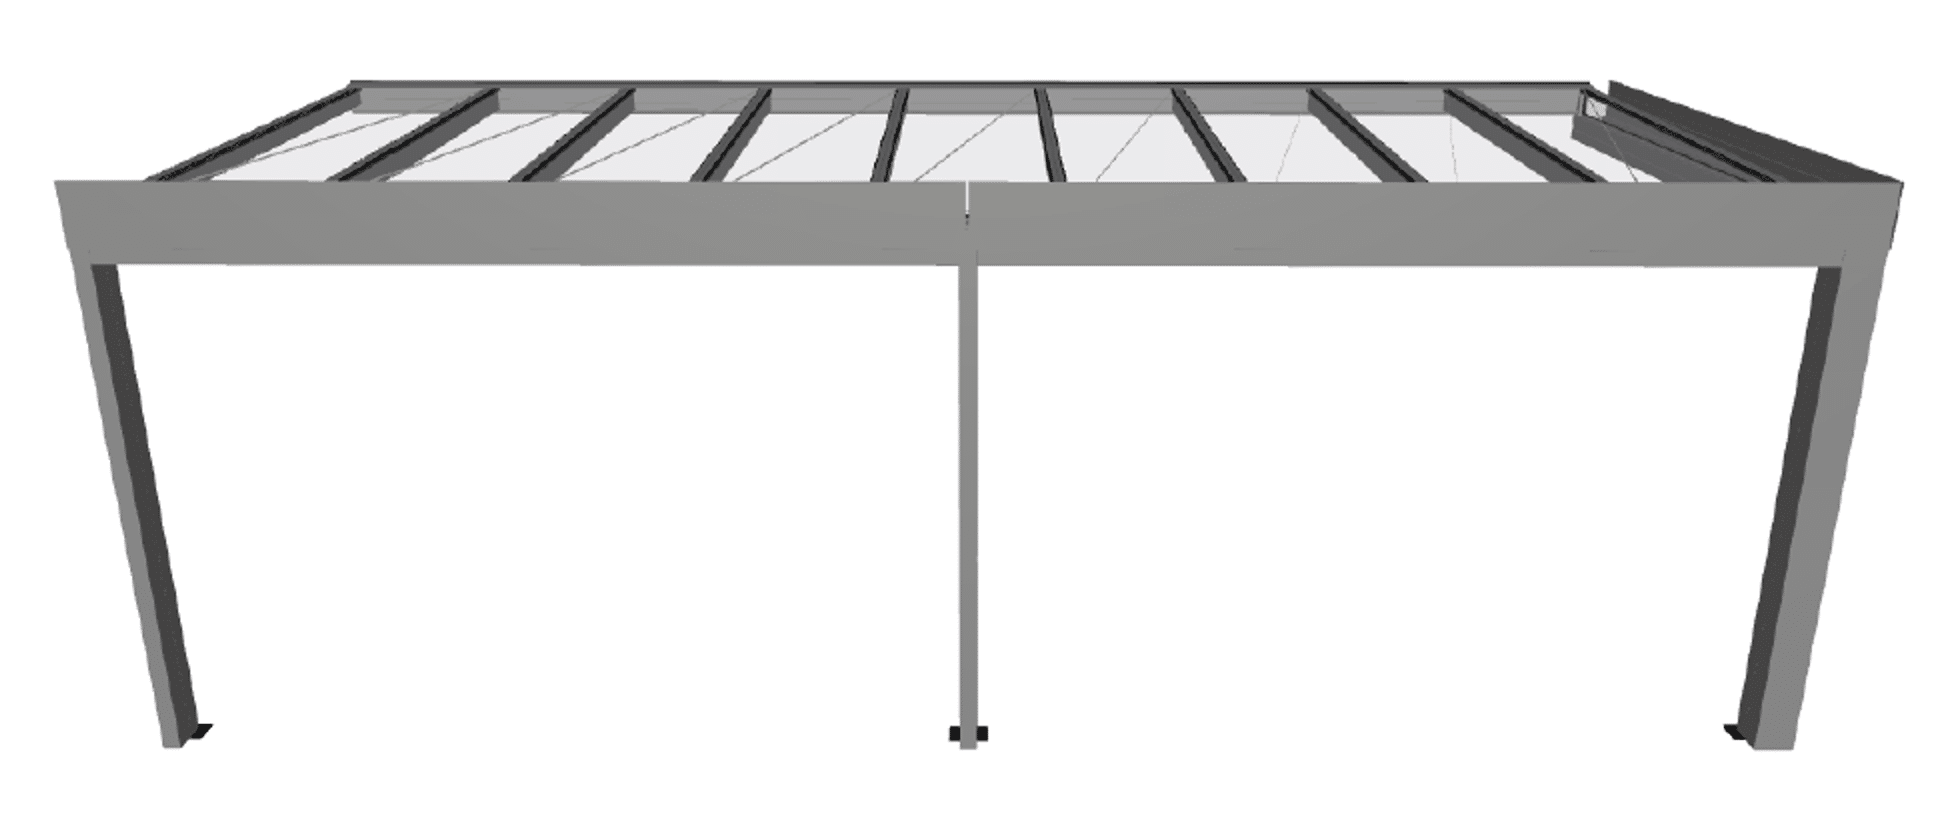 Terrassenüberdachung Sunflex System 8 x 3,25 Meter - Preis